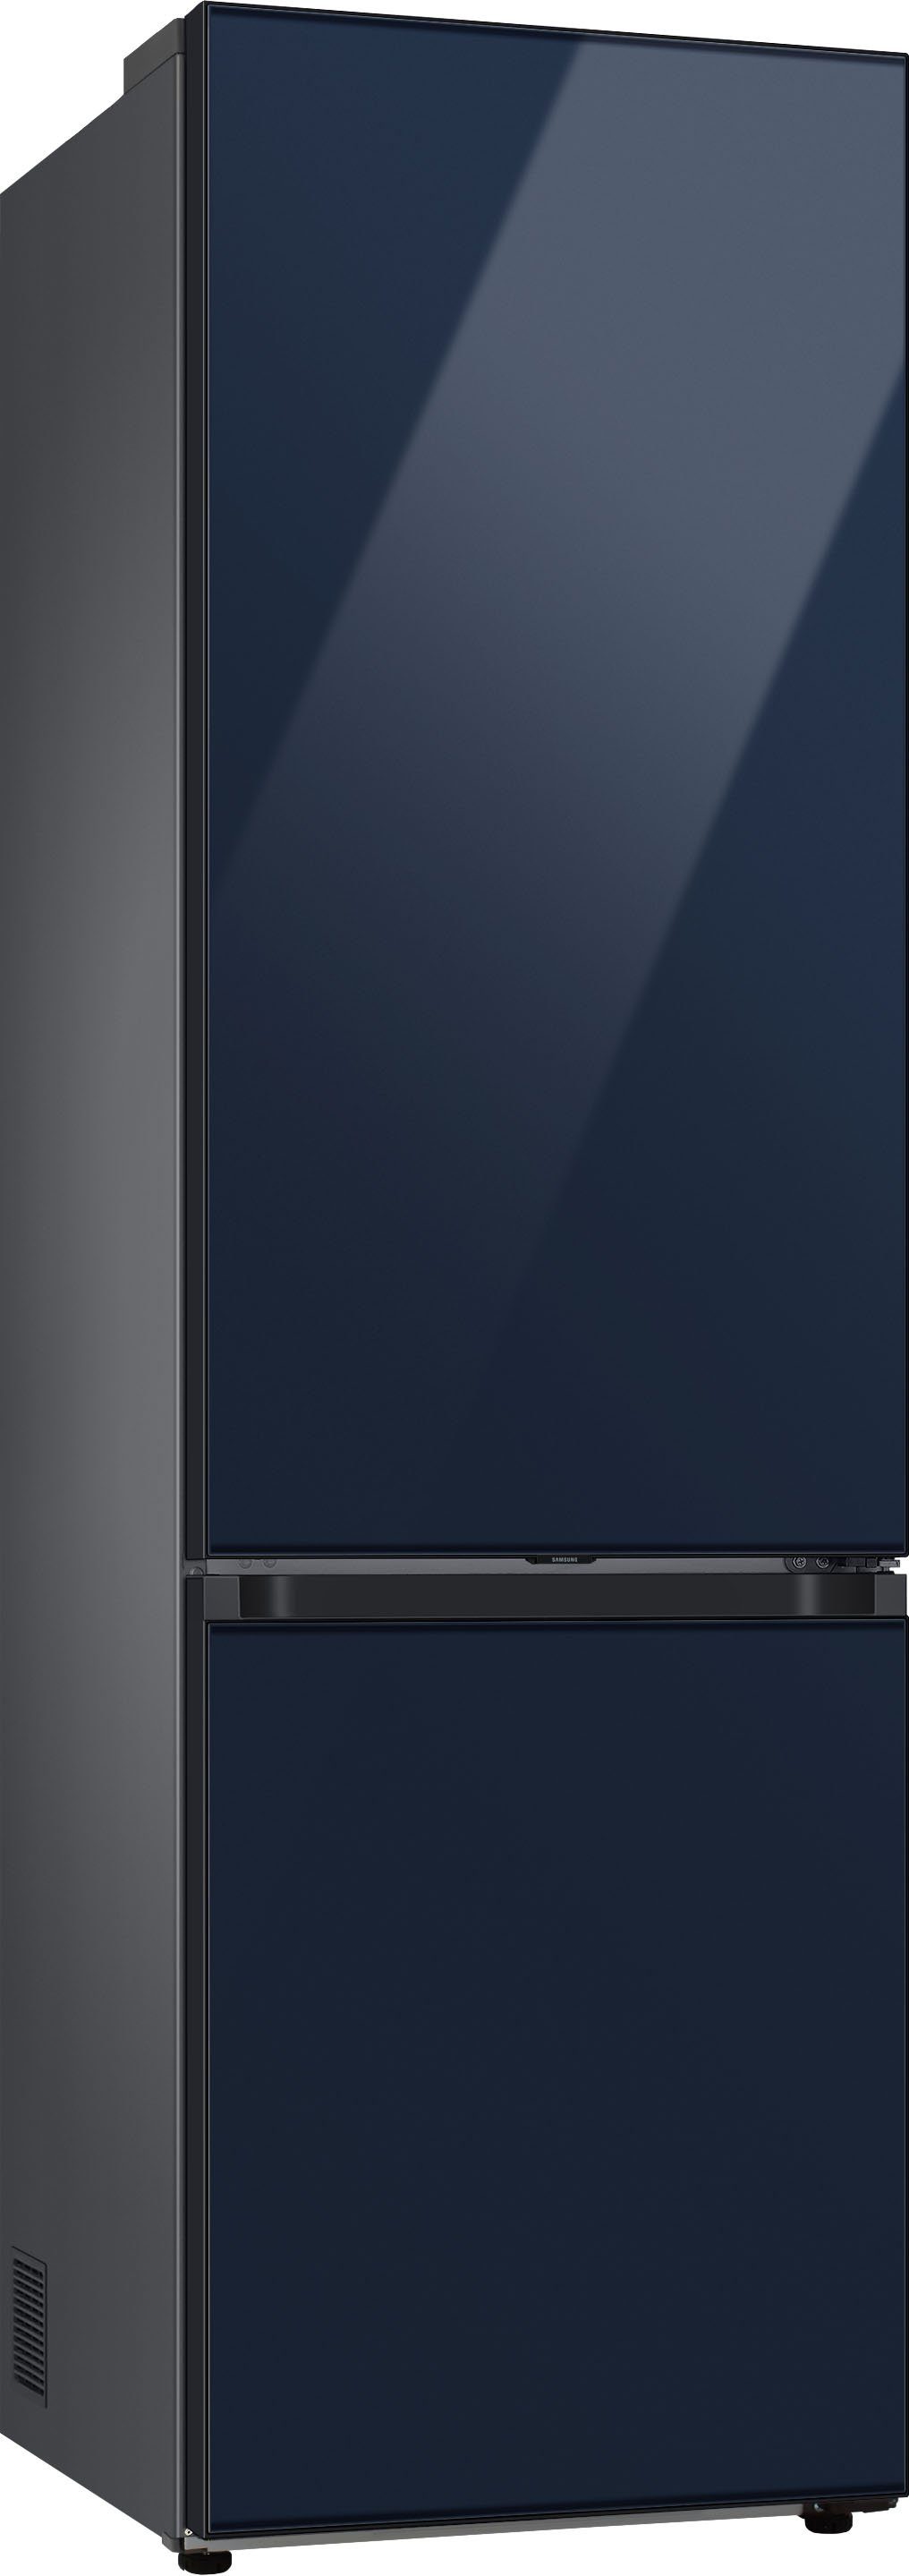 Samsung hoch, cm RL38A6B6C41, 203 cm breit 59,5 Bespoke Kühl-/Gefrierkombination